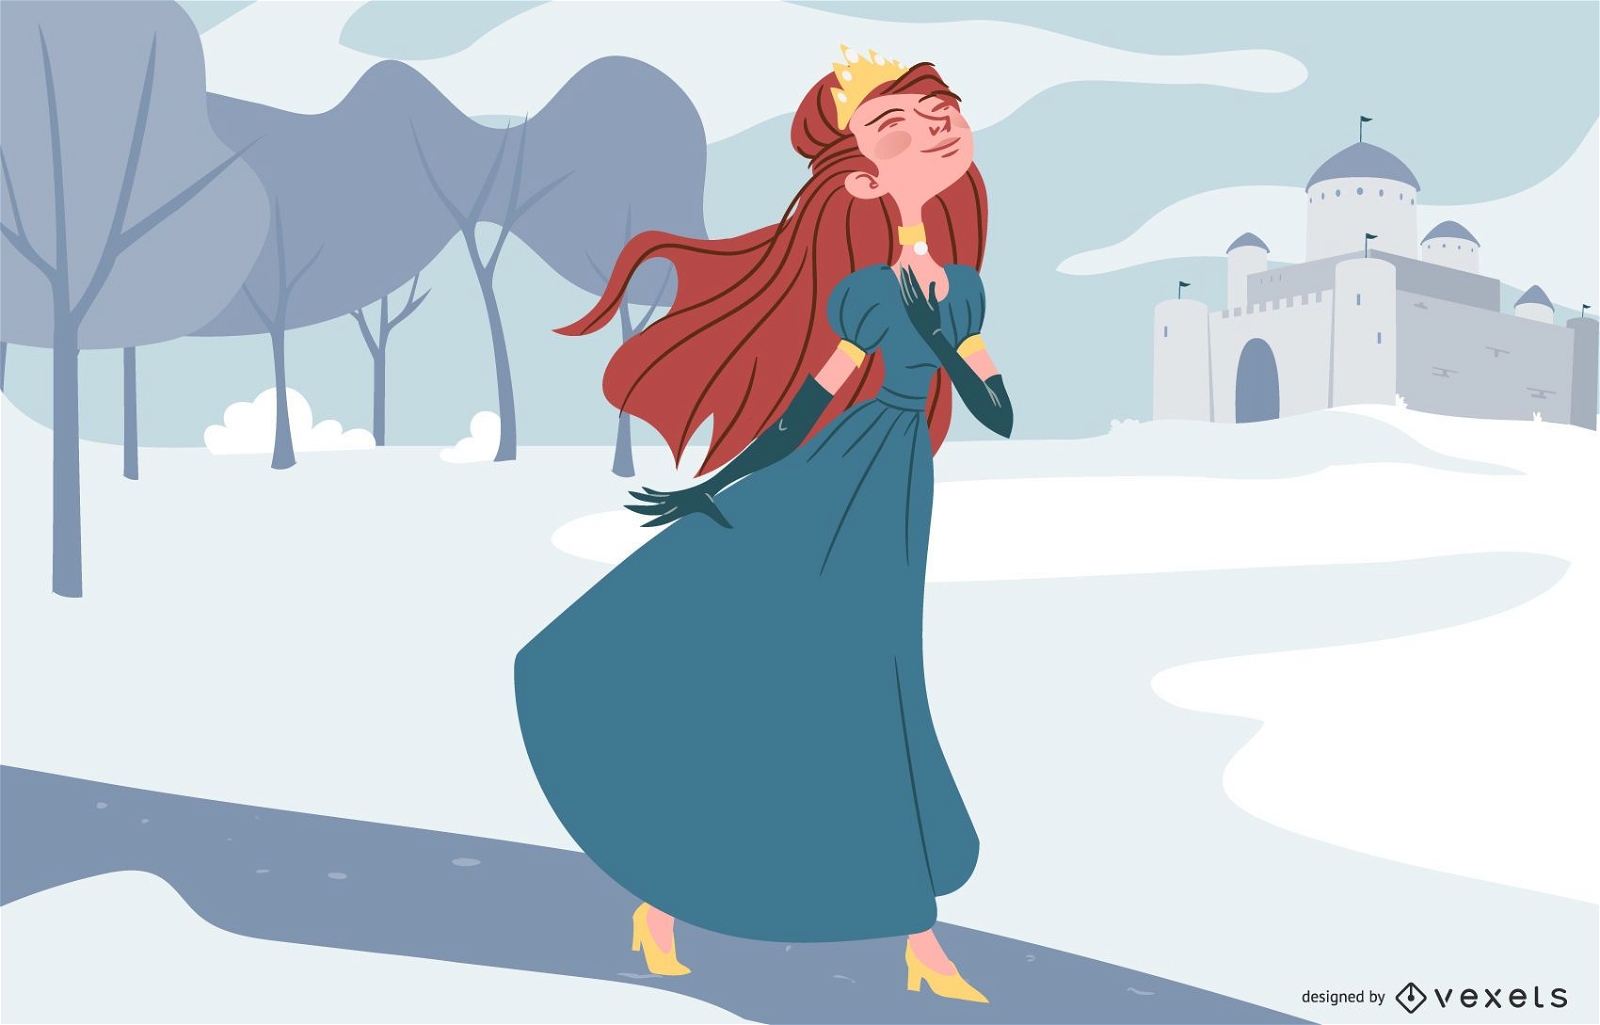 Princesa en ilustración de personaje de invierno